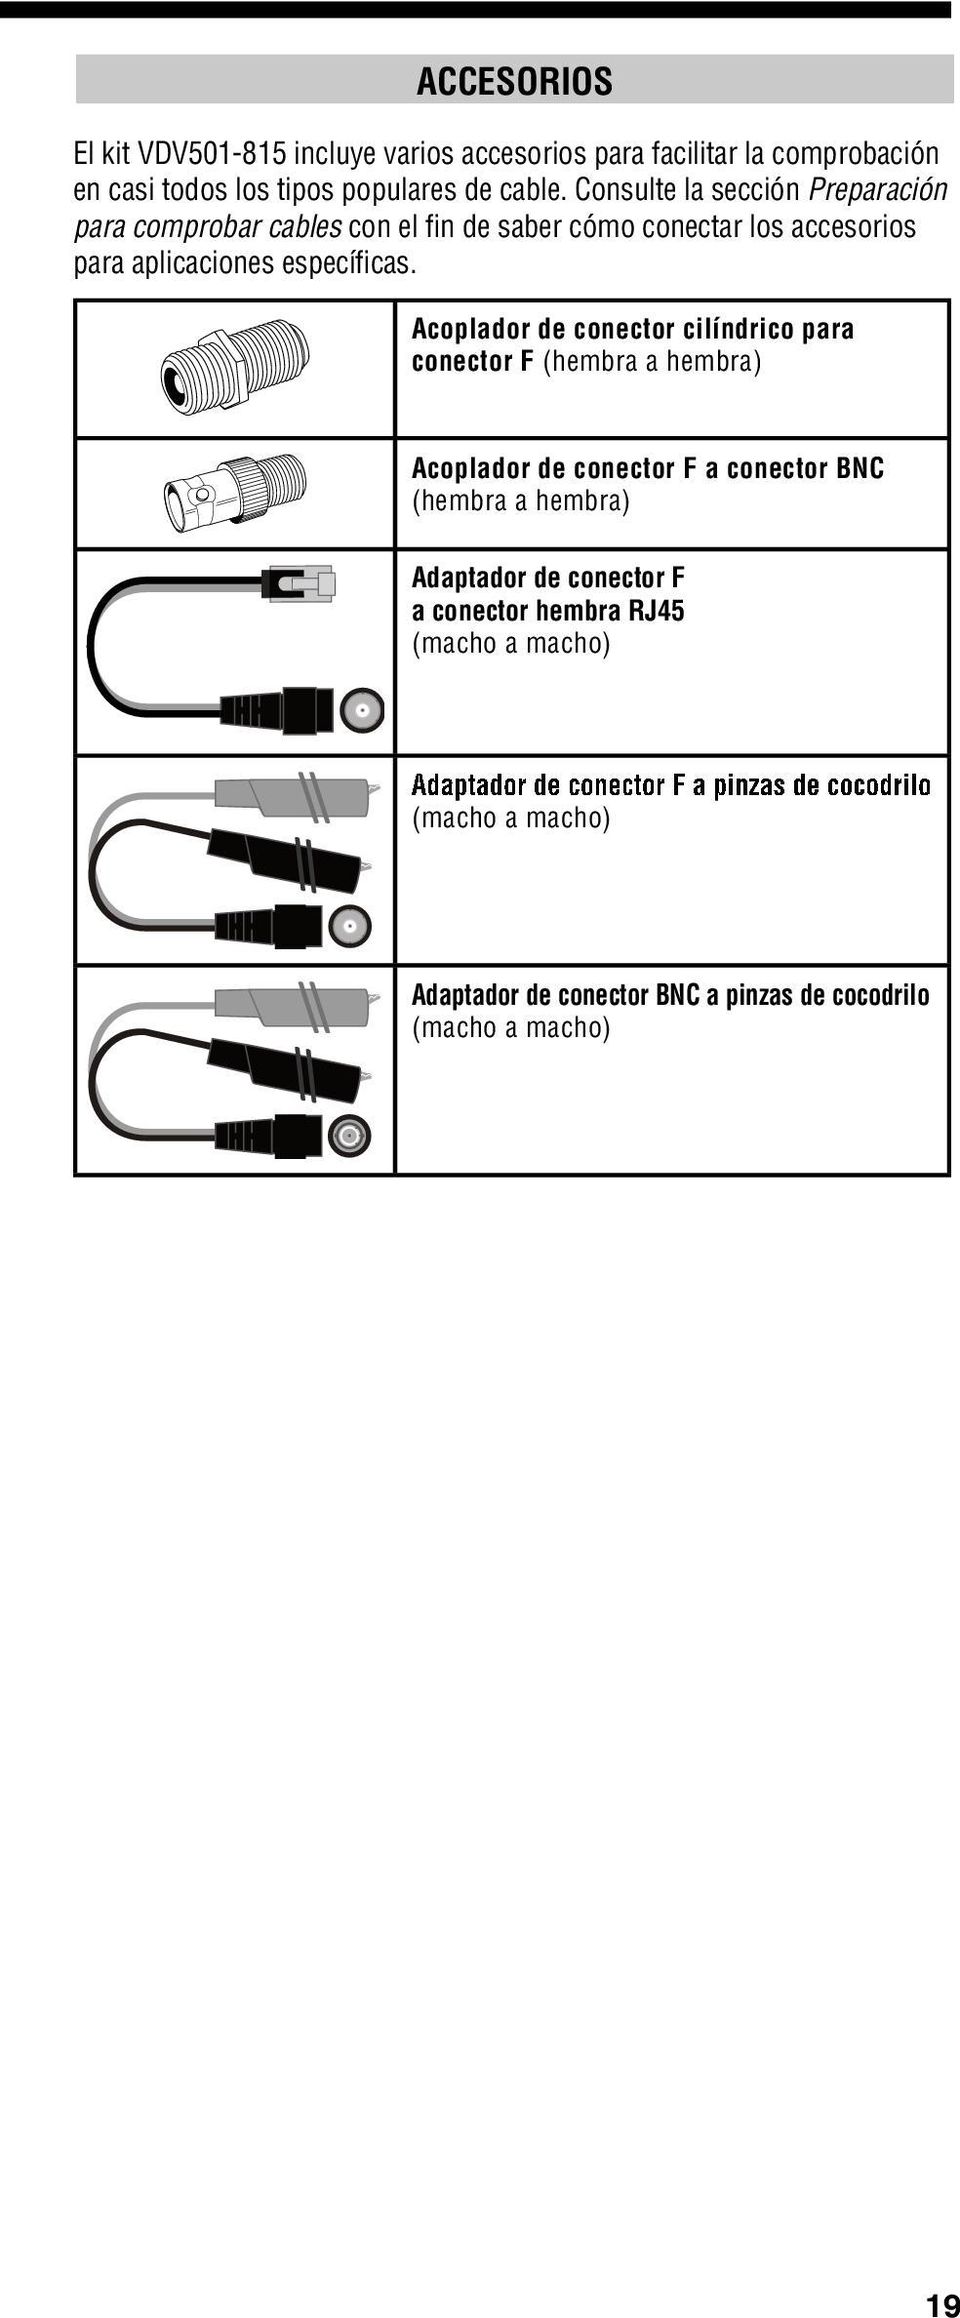 Acoplador de conector cilíndrico para conector F (hembra a hembra) Acoplador de conector F a conector BNC (hembra a hembra) Adaptador de conector